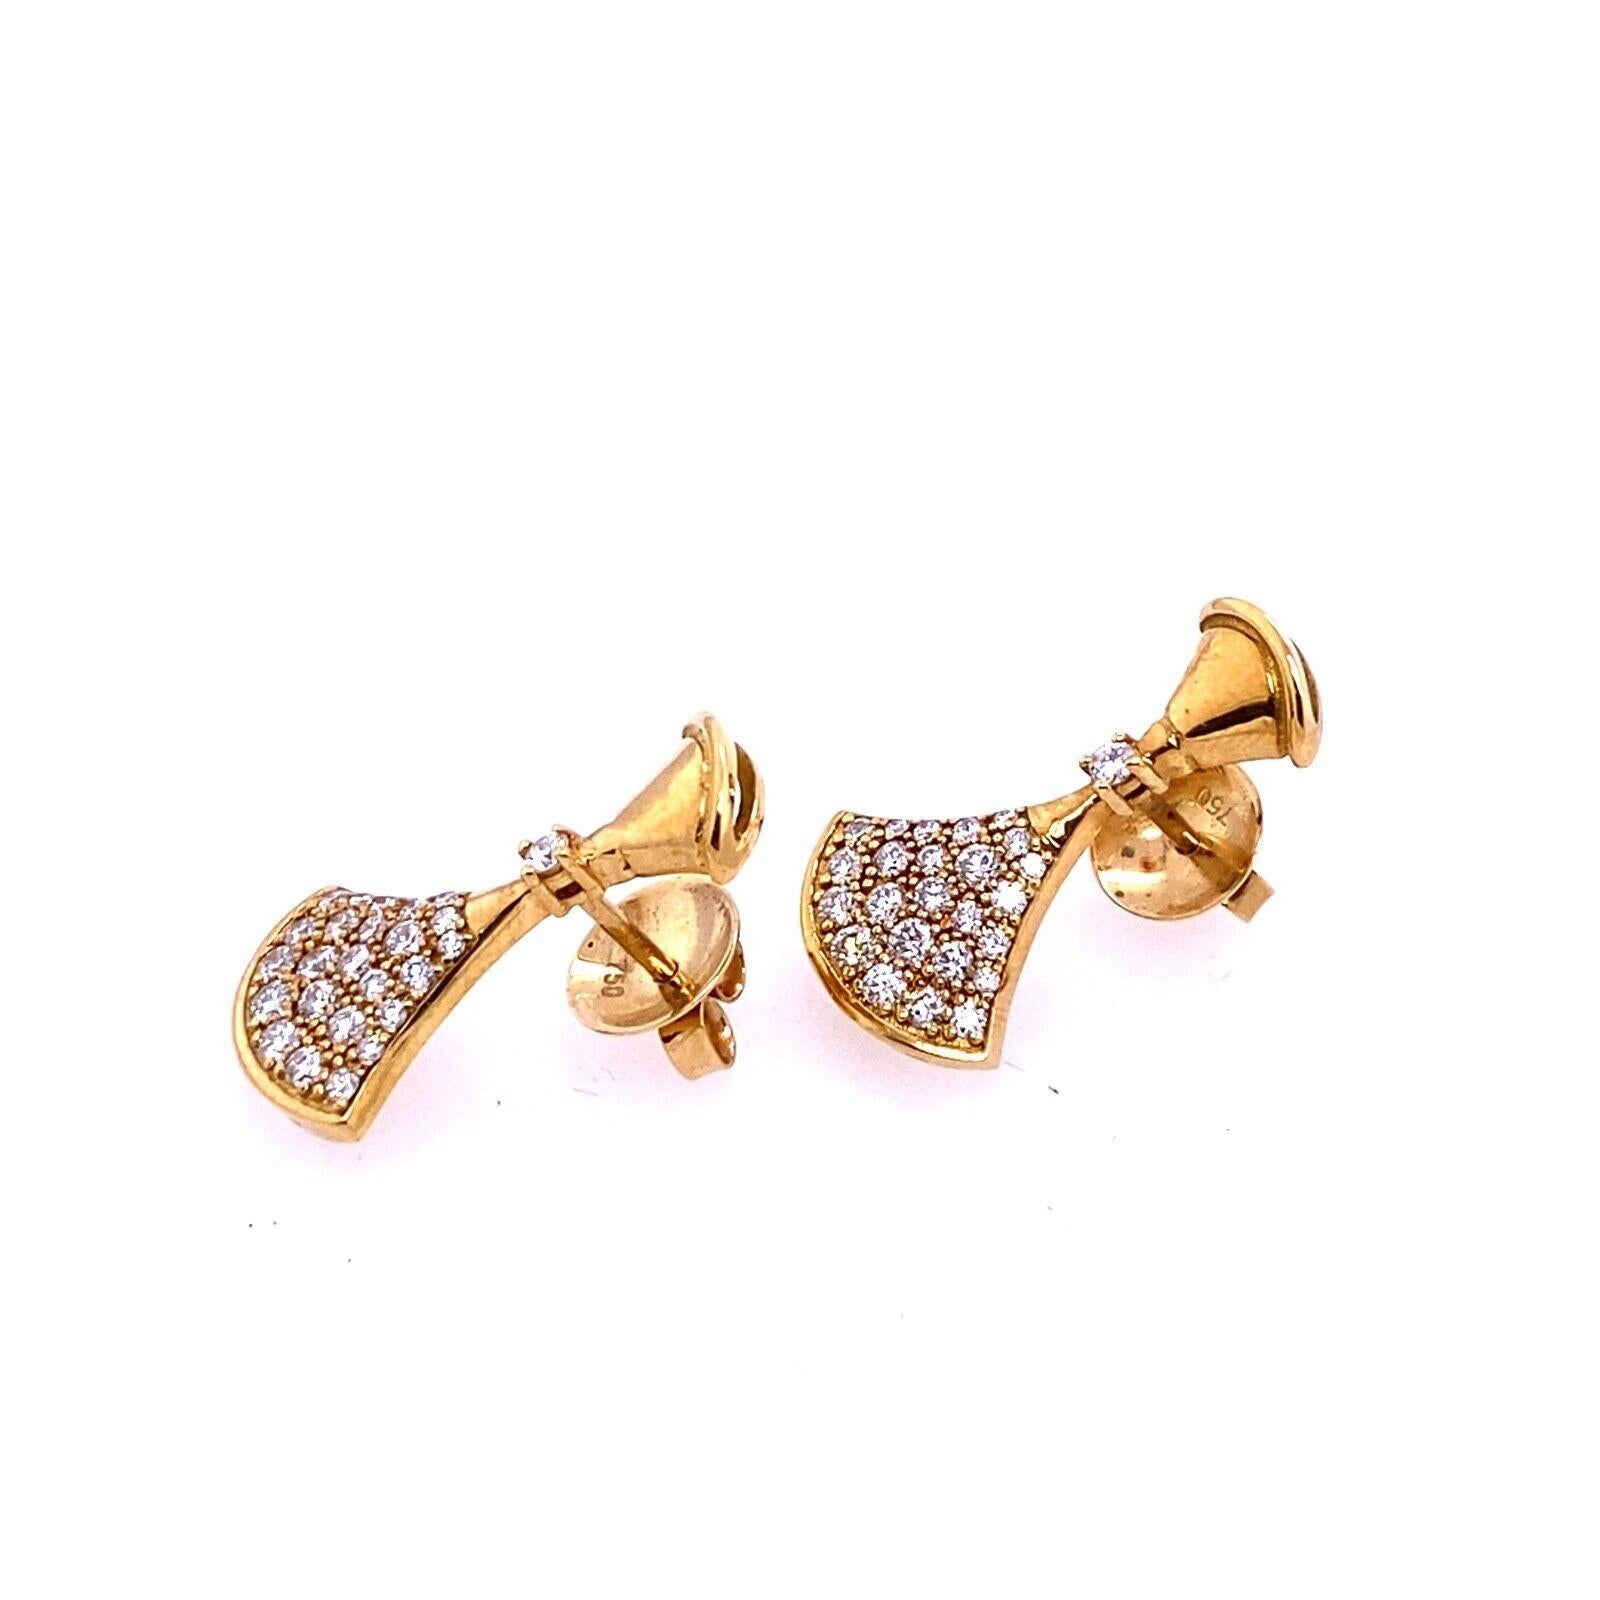 Modern Fine Quality Fan Shape Diamond Earrings in 18ct Yellow Gold For Sale